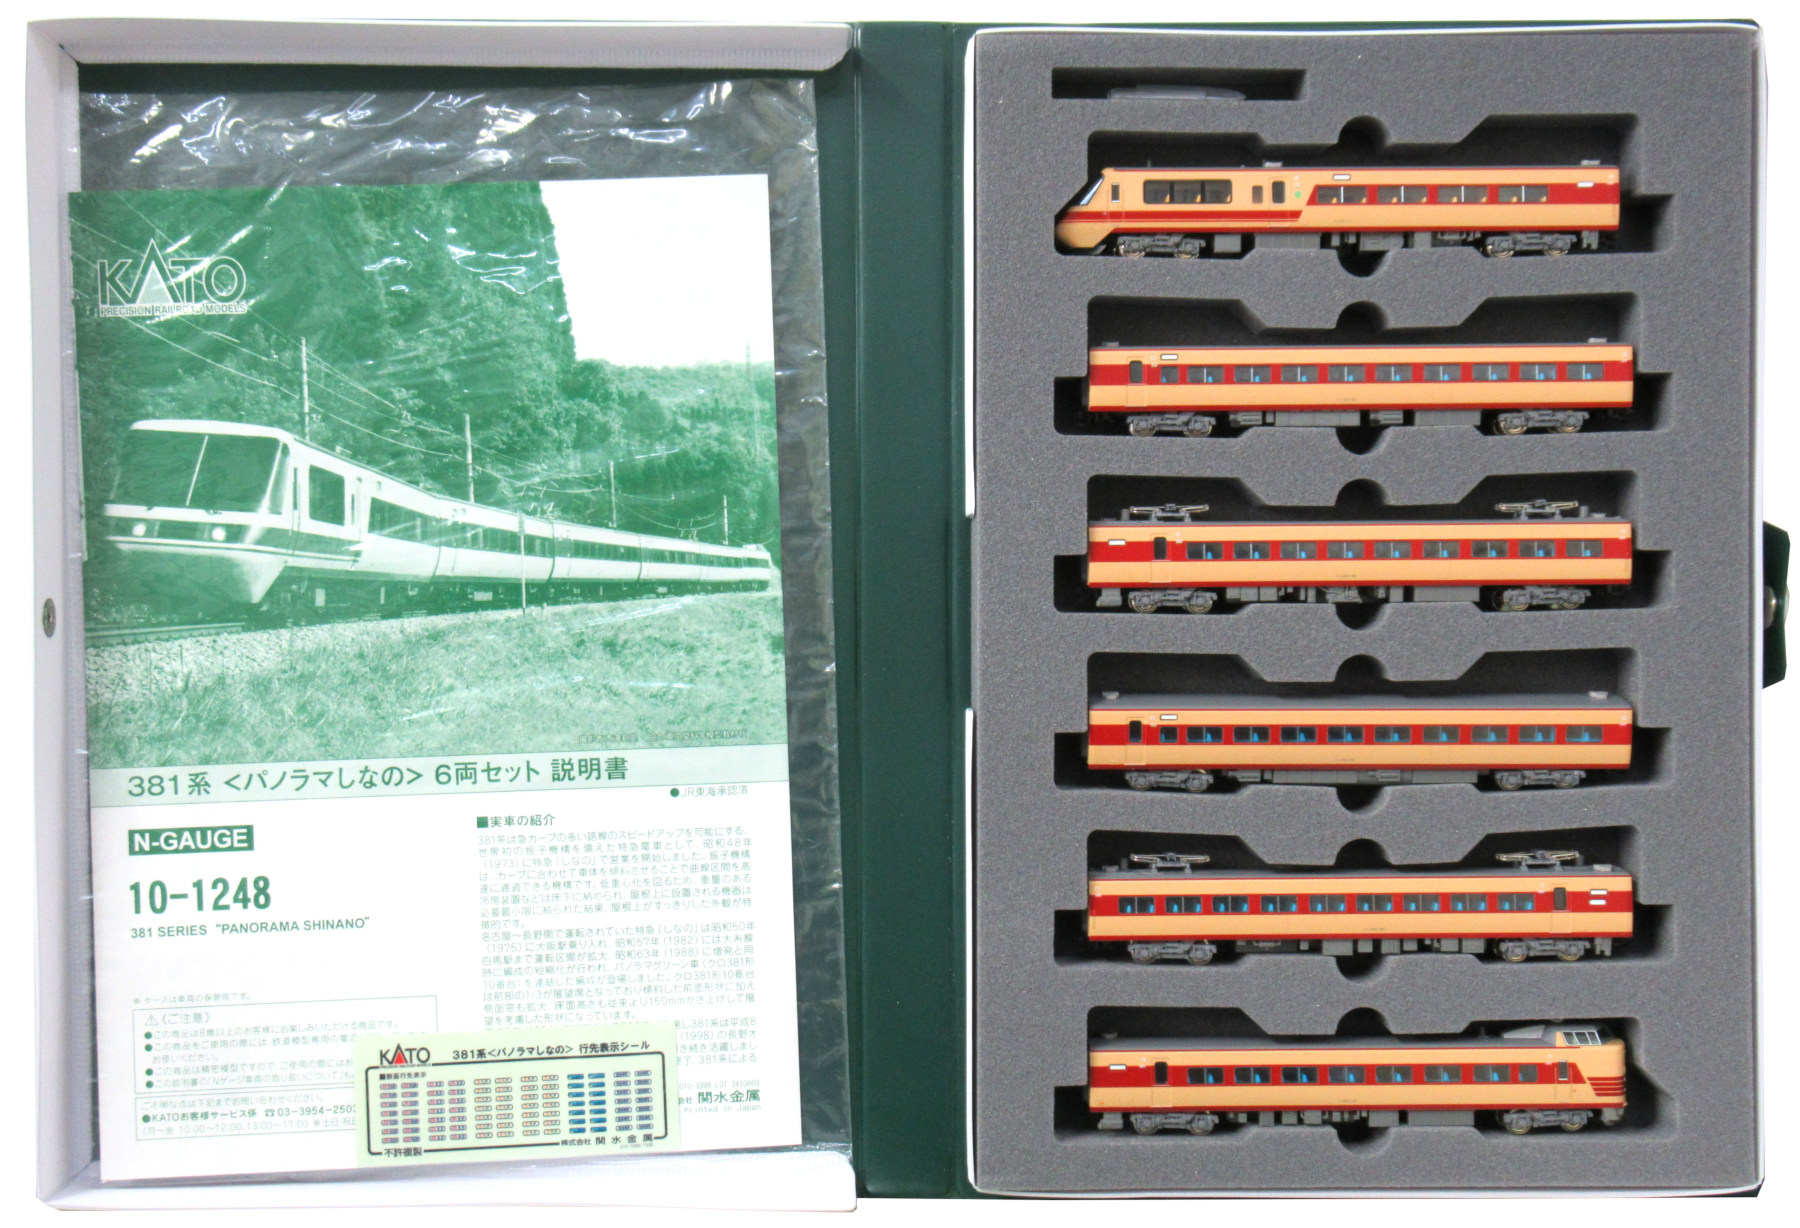 公式]鉄道模型(10-1248381系「パノラマしなの」6両セット)商品詳細